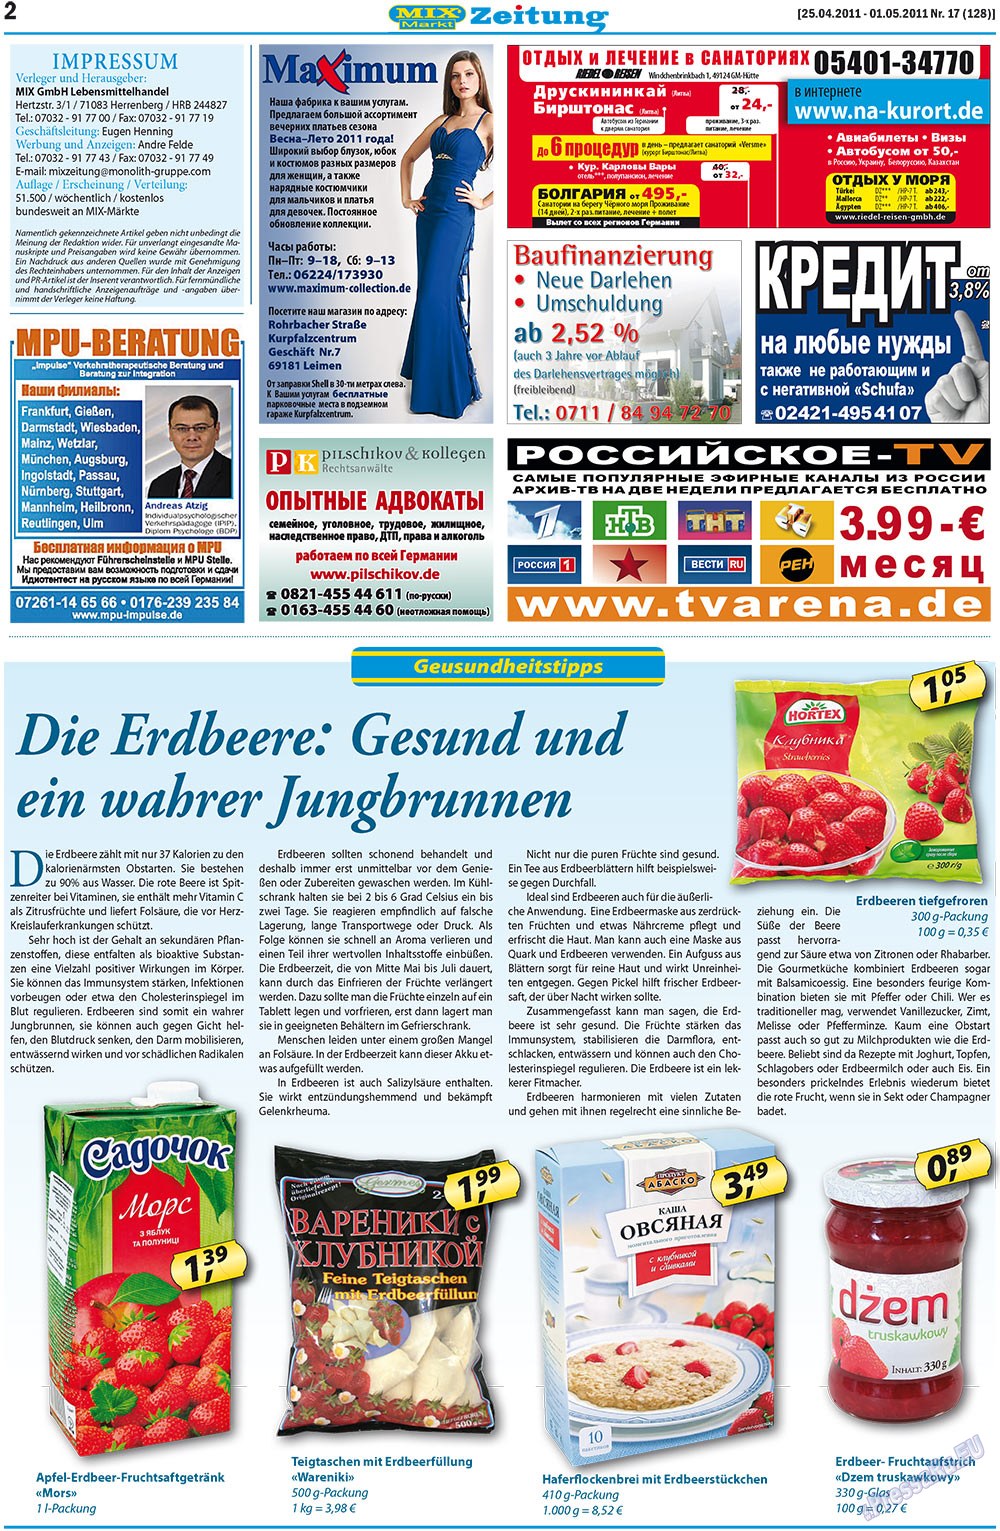 MIX-Markt Zeitung (Zeitung). 2011 Jahr, Ausgabe 17, Seite 2